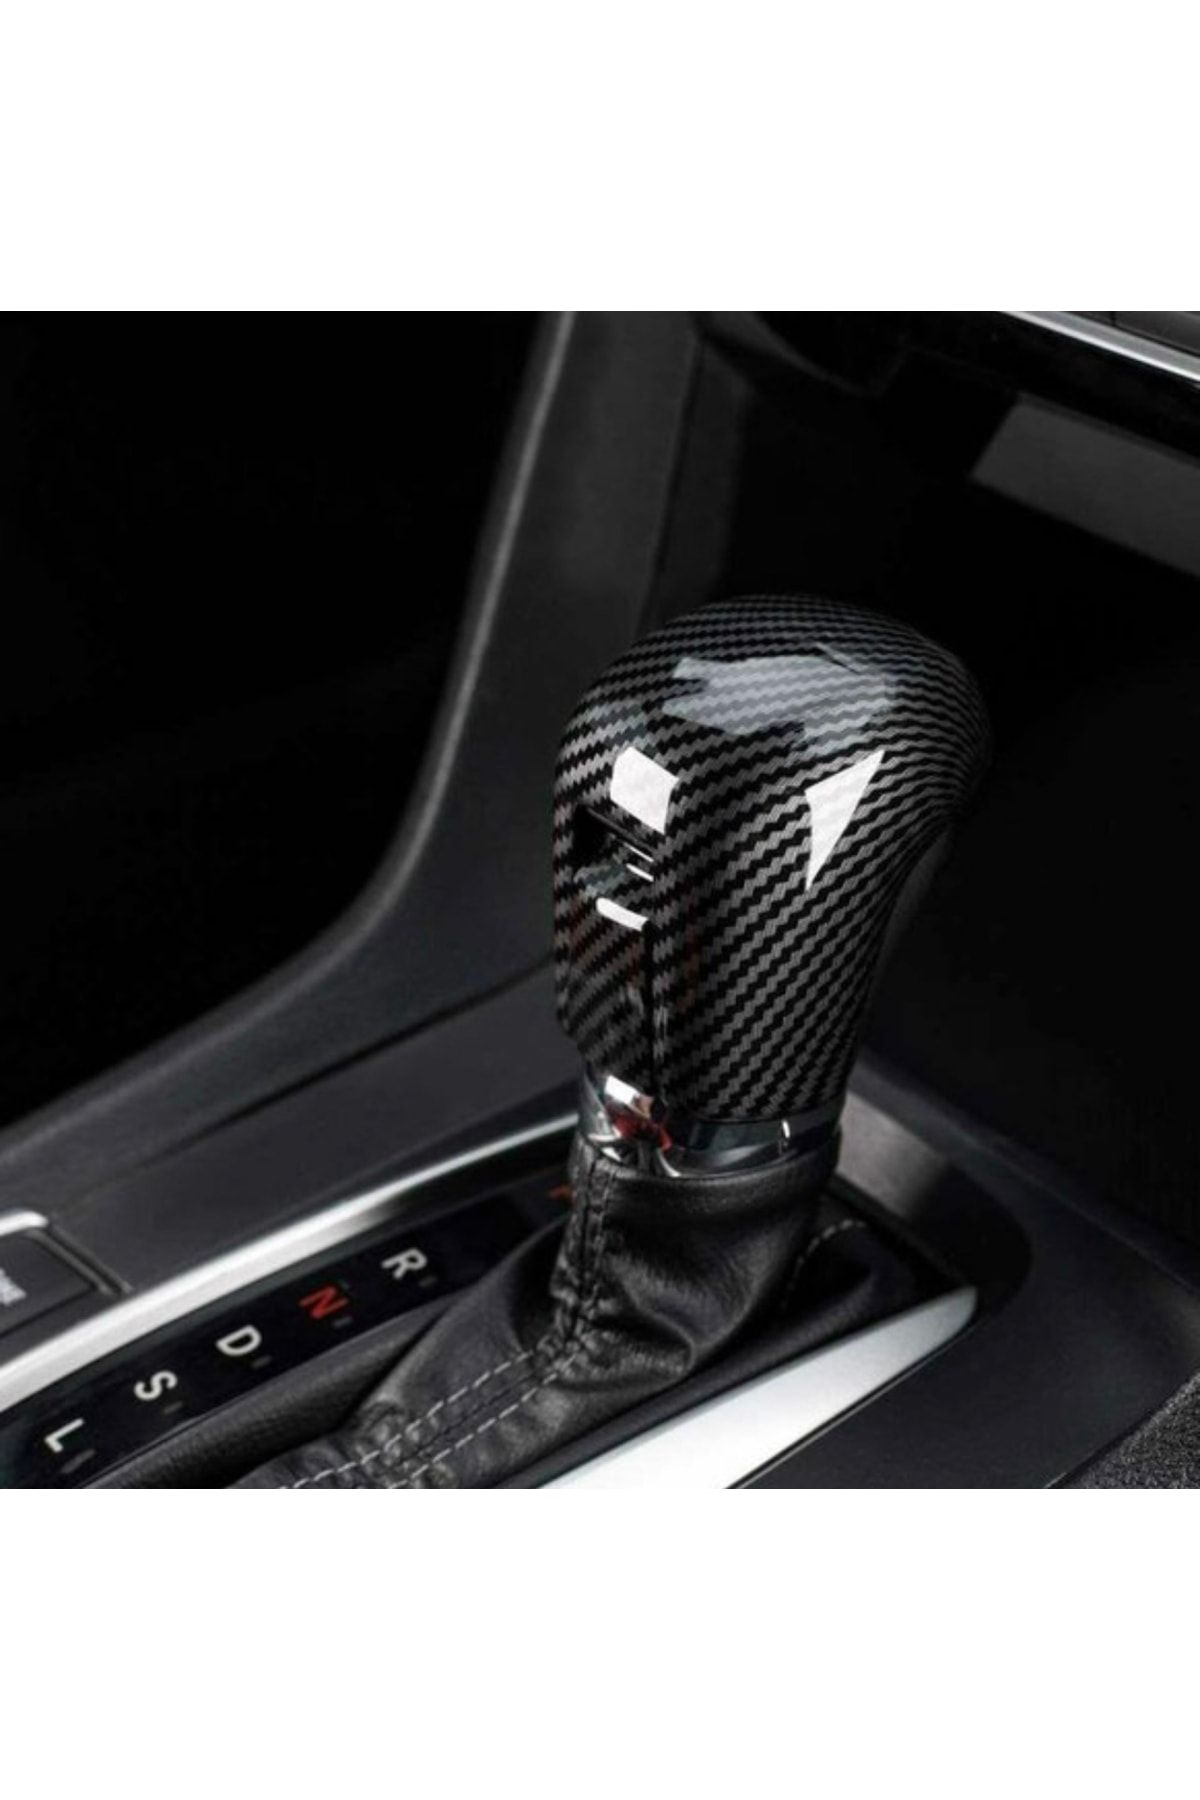 AYZ GARAGE Honda Civic Fc5 Karbon Vites Kılıfı 3’lü Set